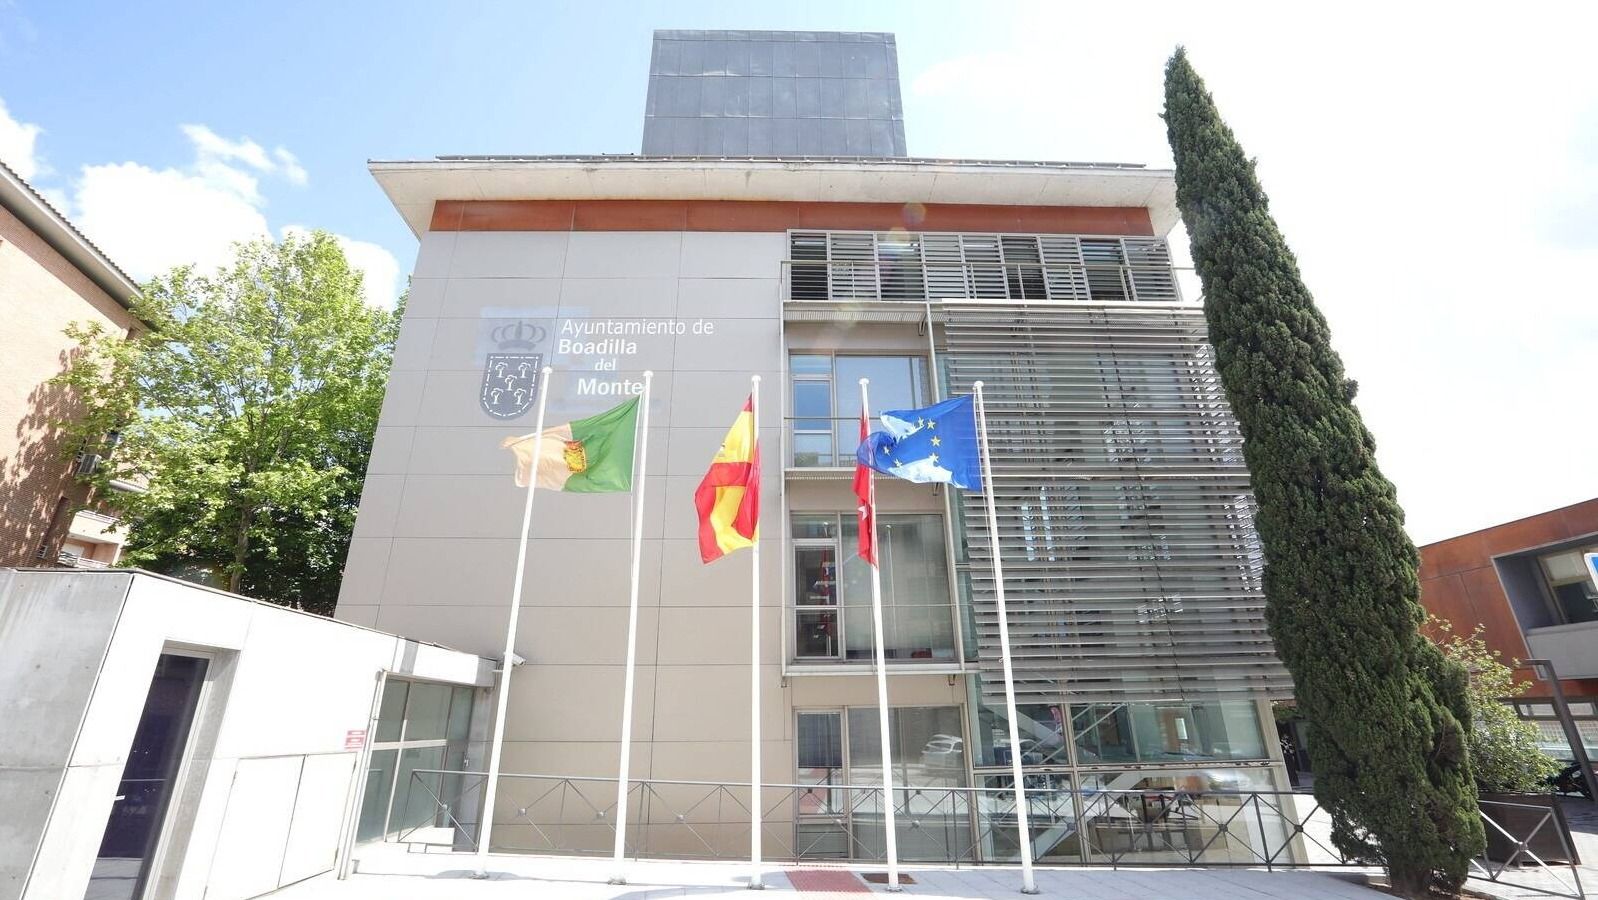 El Ayuntamiento de Boadilla instalará placas fotovoltaicas en varios edificios municipales